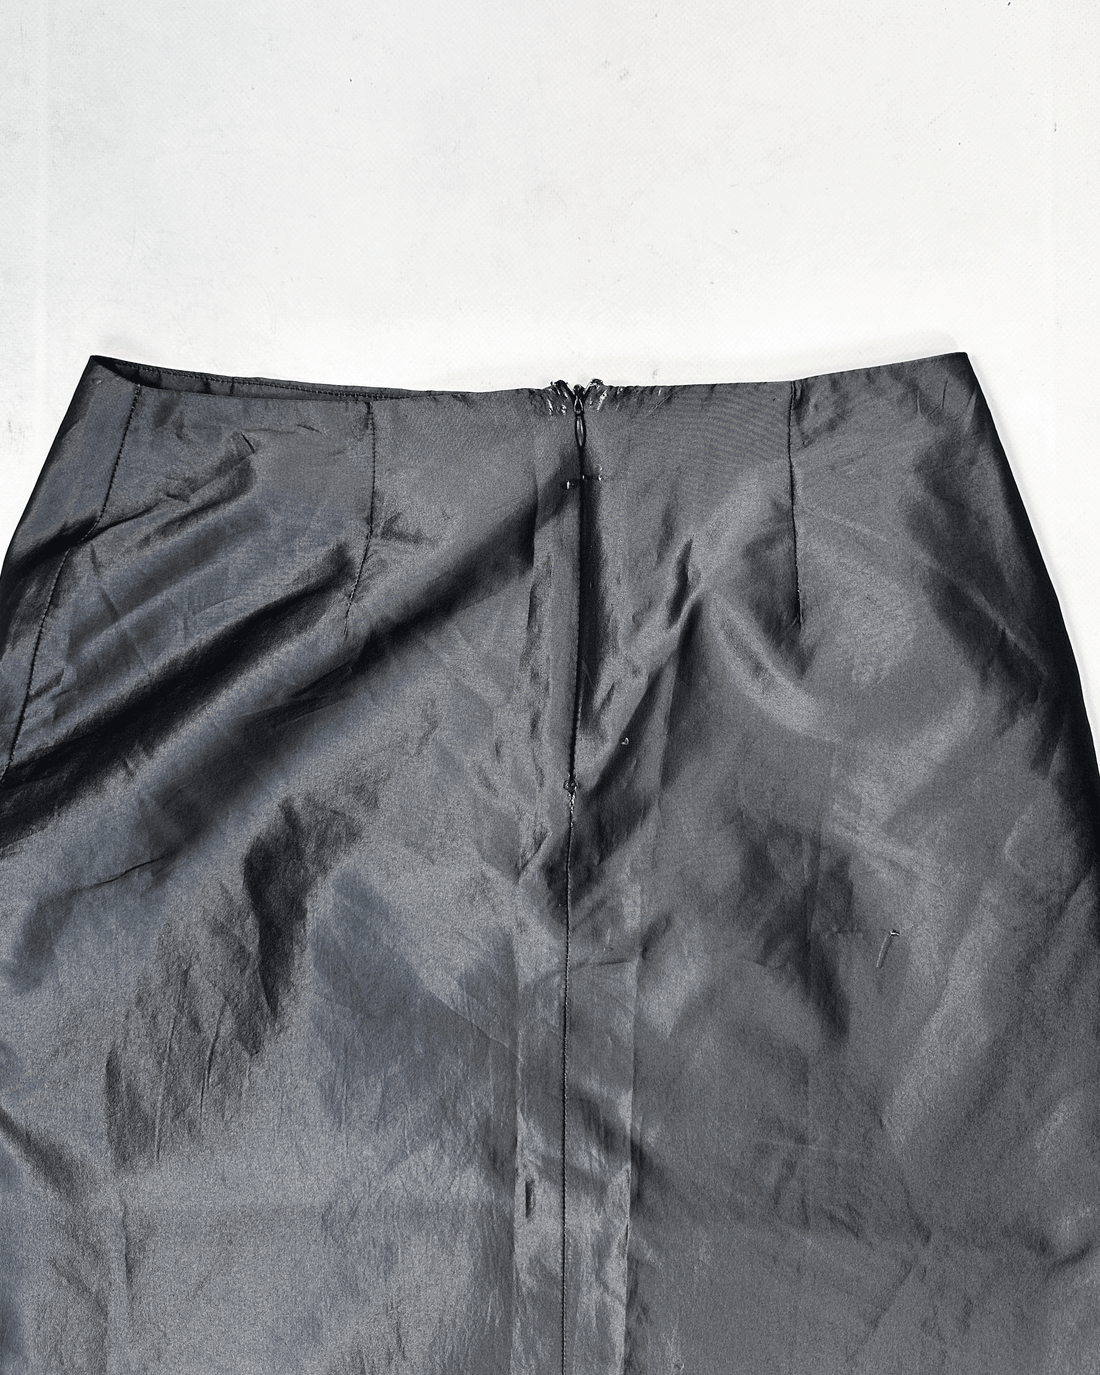 Sarah Paccini Metallic Grey Maxi Skirt 2000's